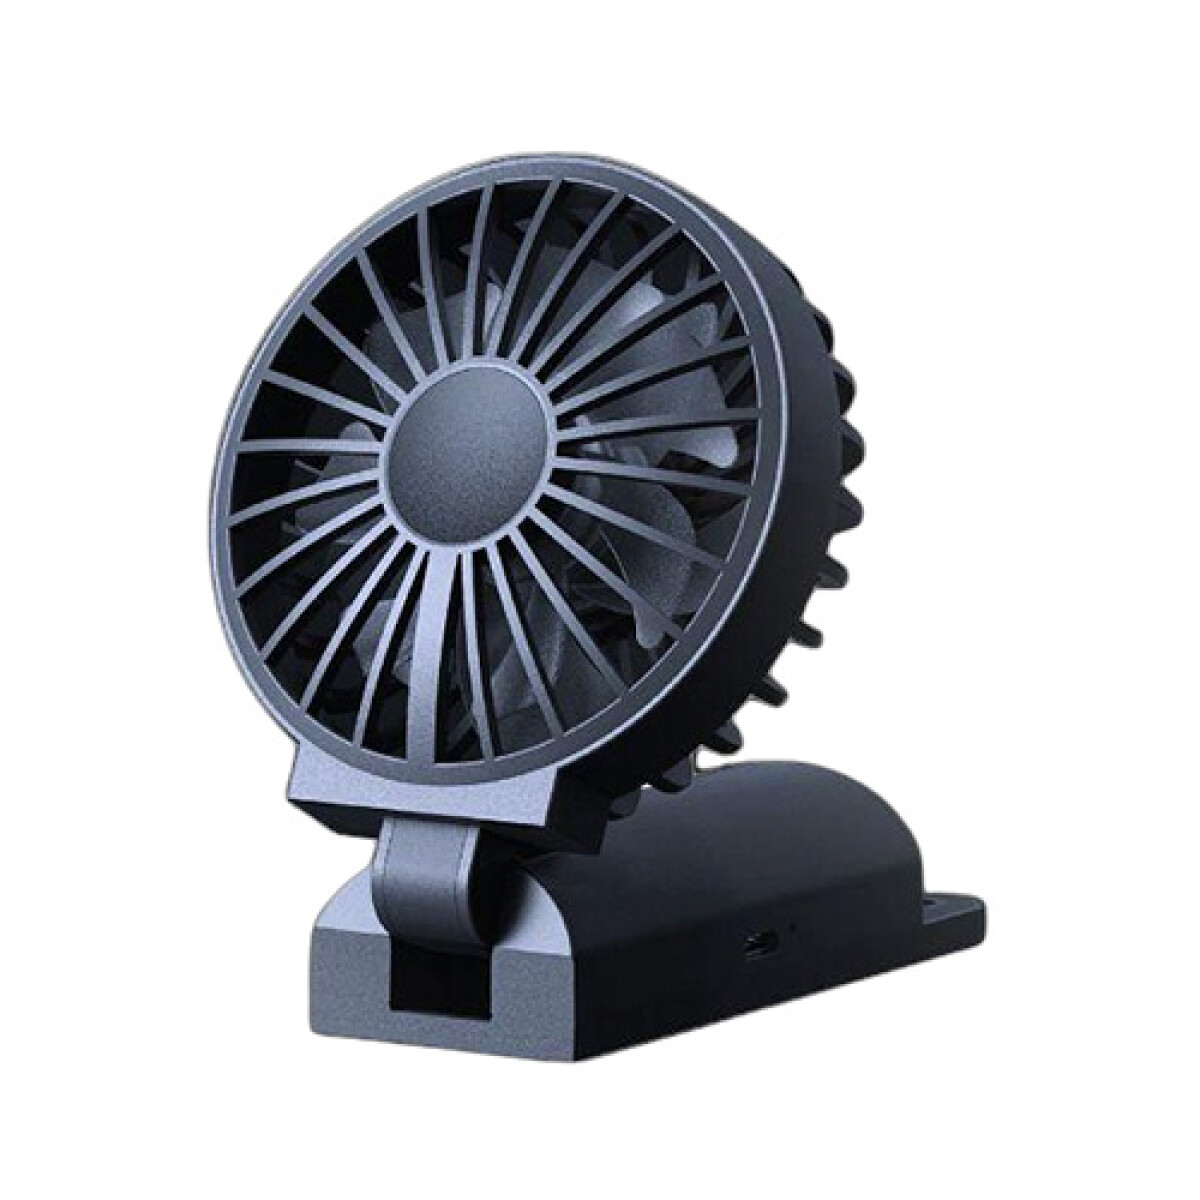 Oraimo - Ventilador de Mano Portátil. OPC-F6N. Diseño Plegable. 4 Velocidades Ajustables. Dobles Asp - 001 